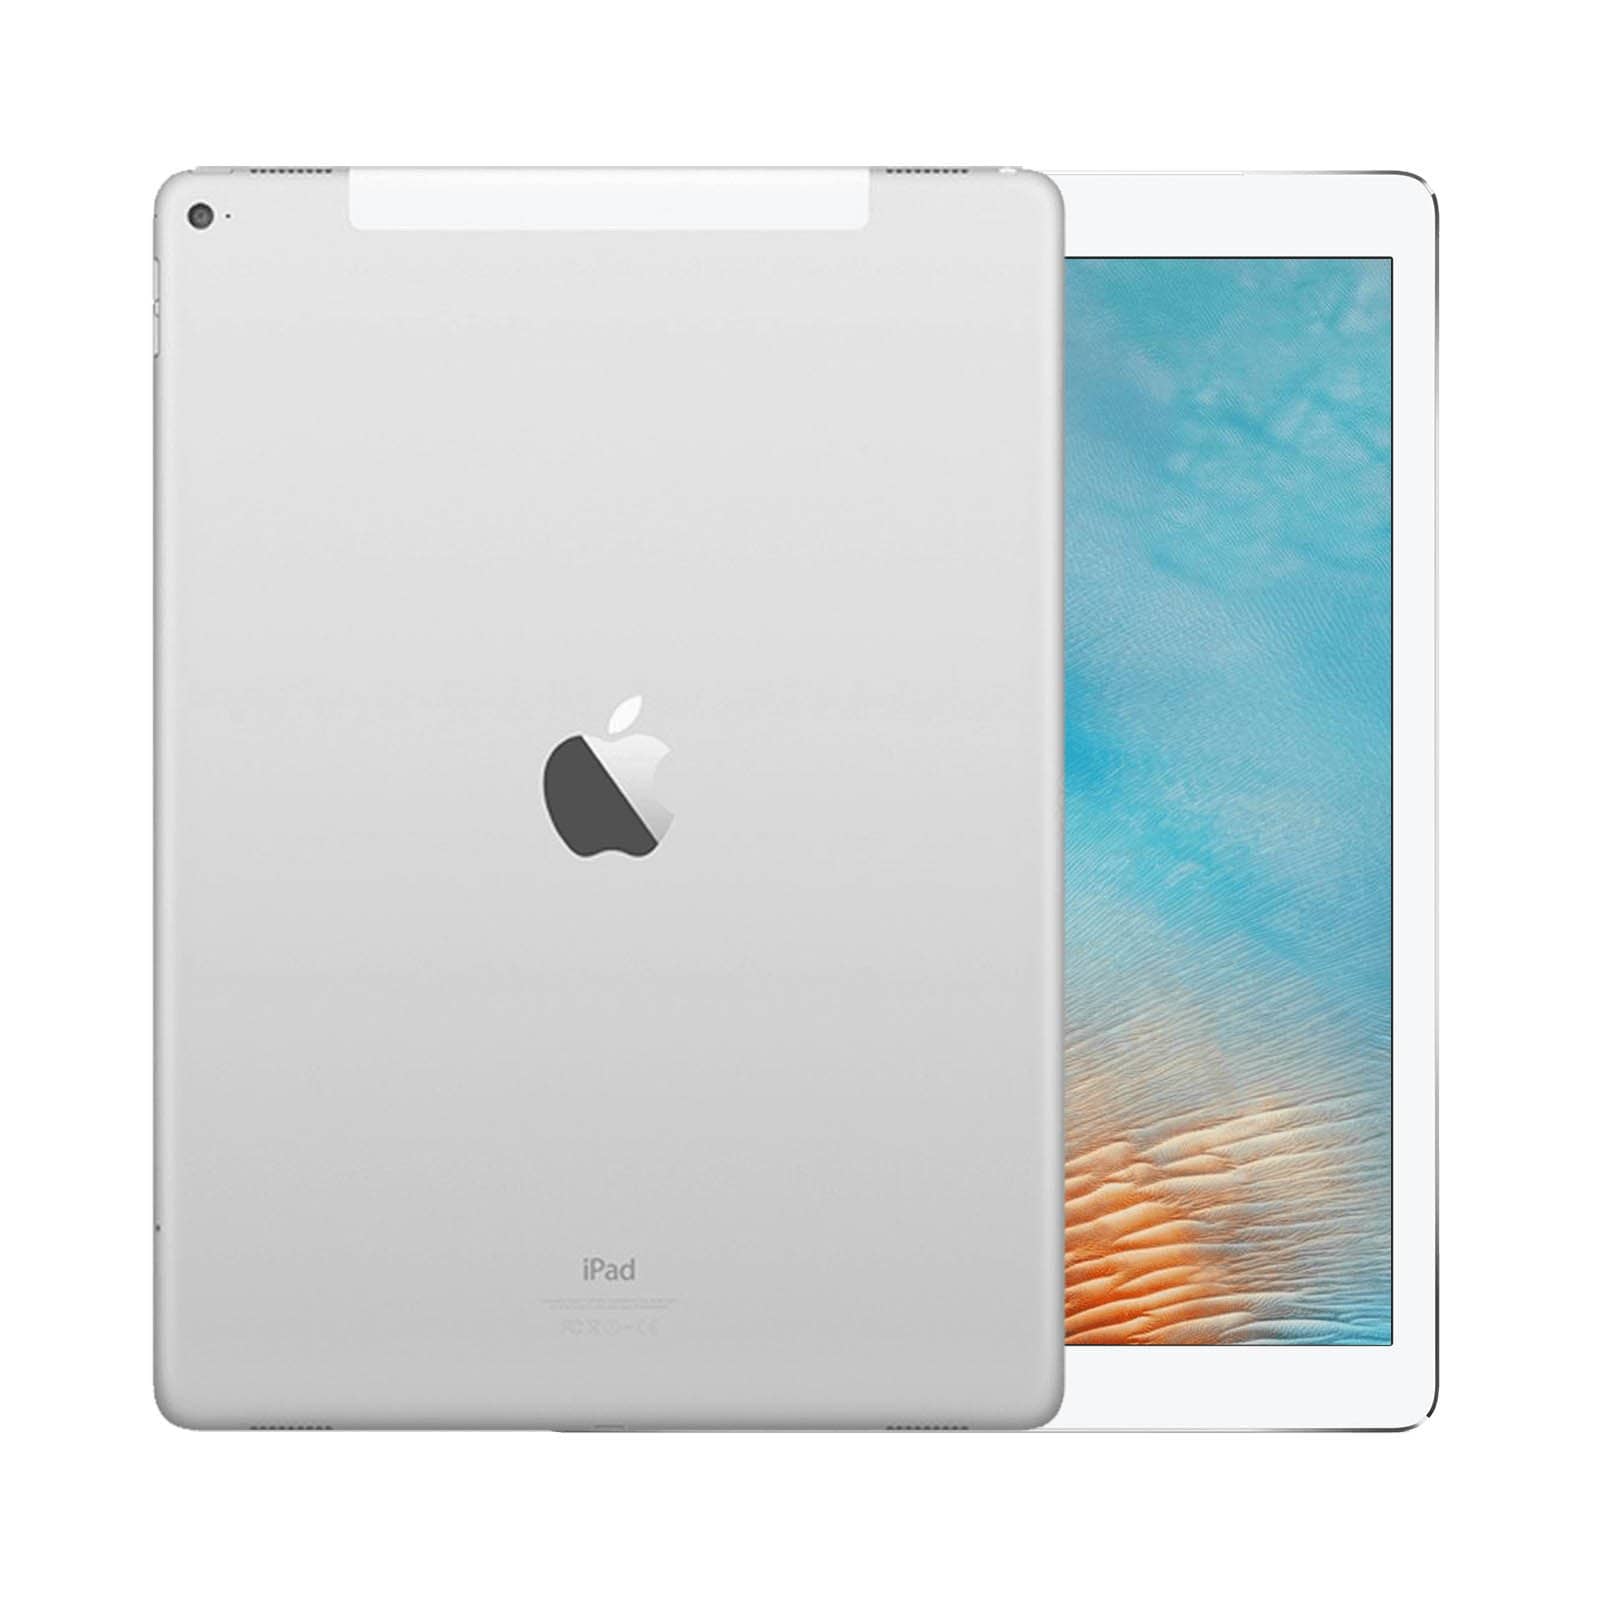 iPad Pro 12.9 Inch 2nd Gen 256GB Silver Good - WiFi 256GB Silver Good